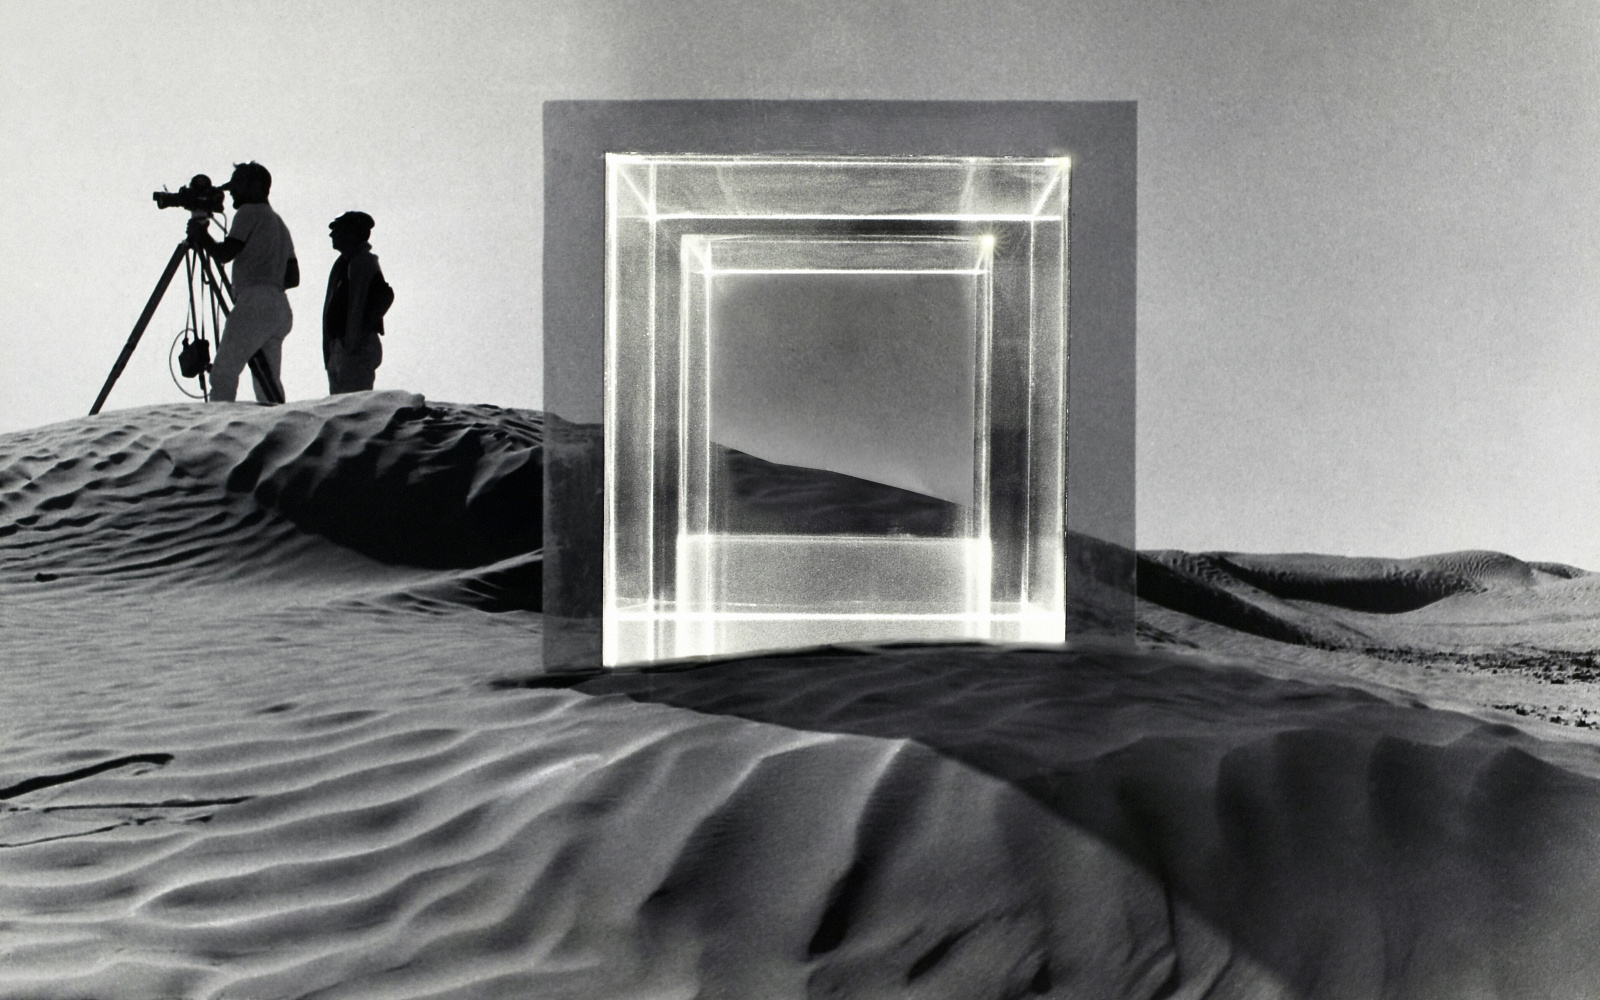 In einer Wüstenlandschaft um 1968 fanden Dreharbeiten zu dem Film »Tele-Mack« statt. Im Vordergrund steht eine große quadratische Glasskulptur und im Hintergrund stehen zwei Männer mit einer Filmkamera. Das Bild ist schwarz-weiß.